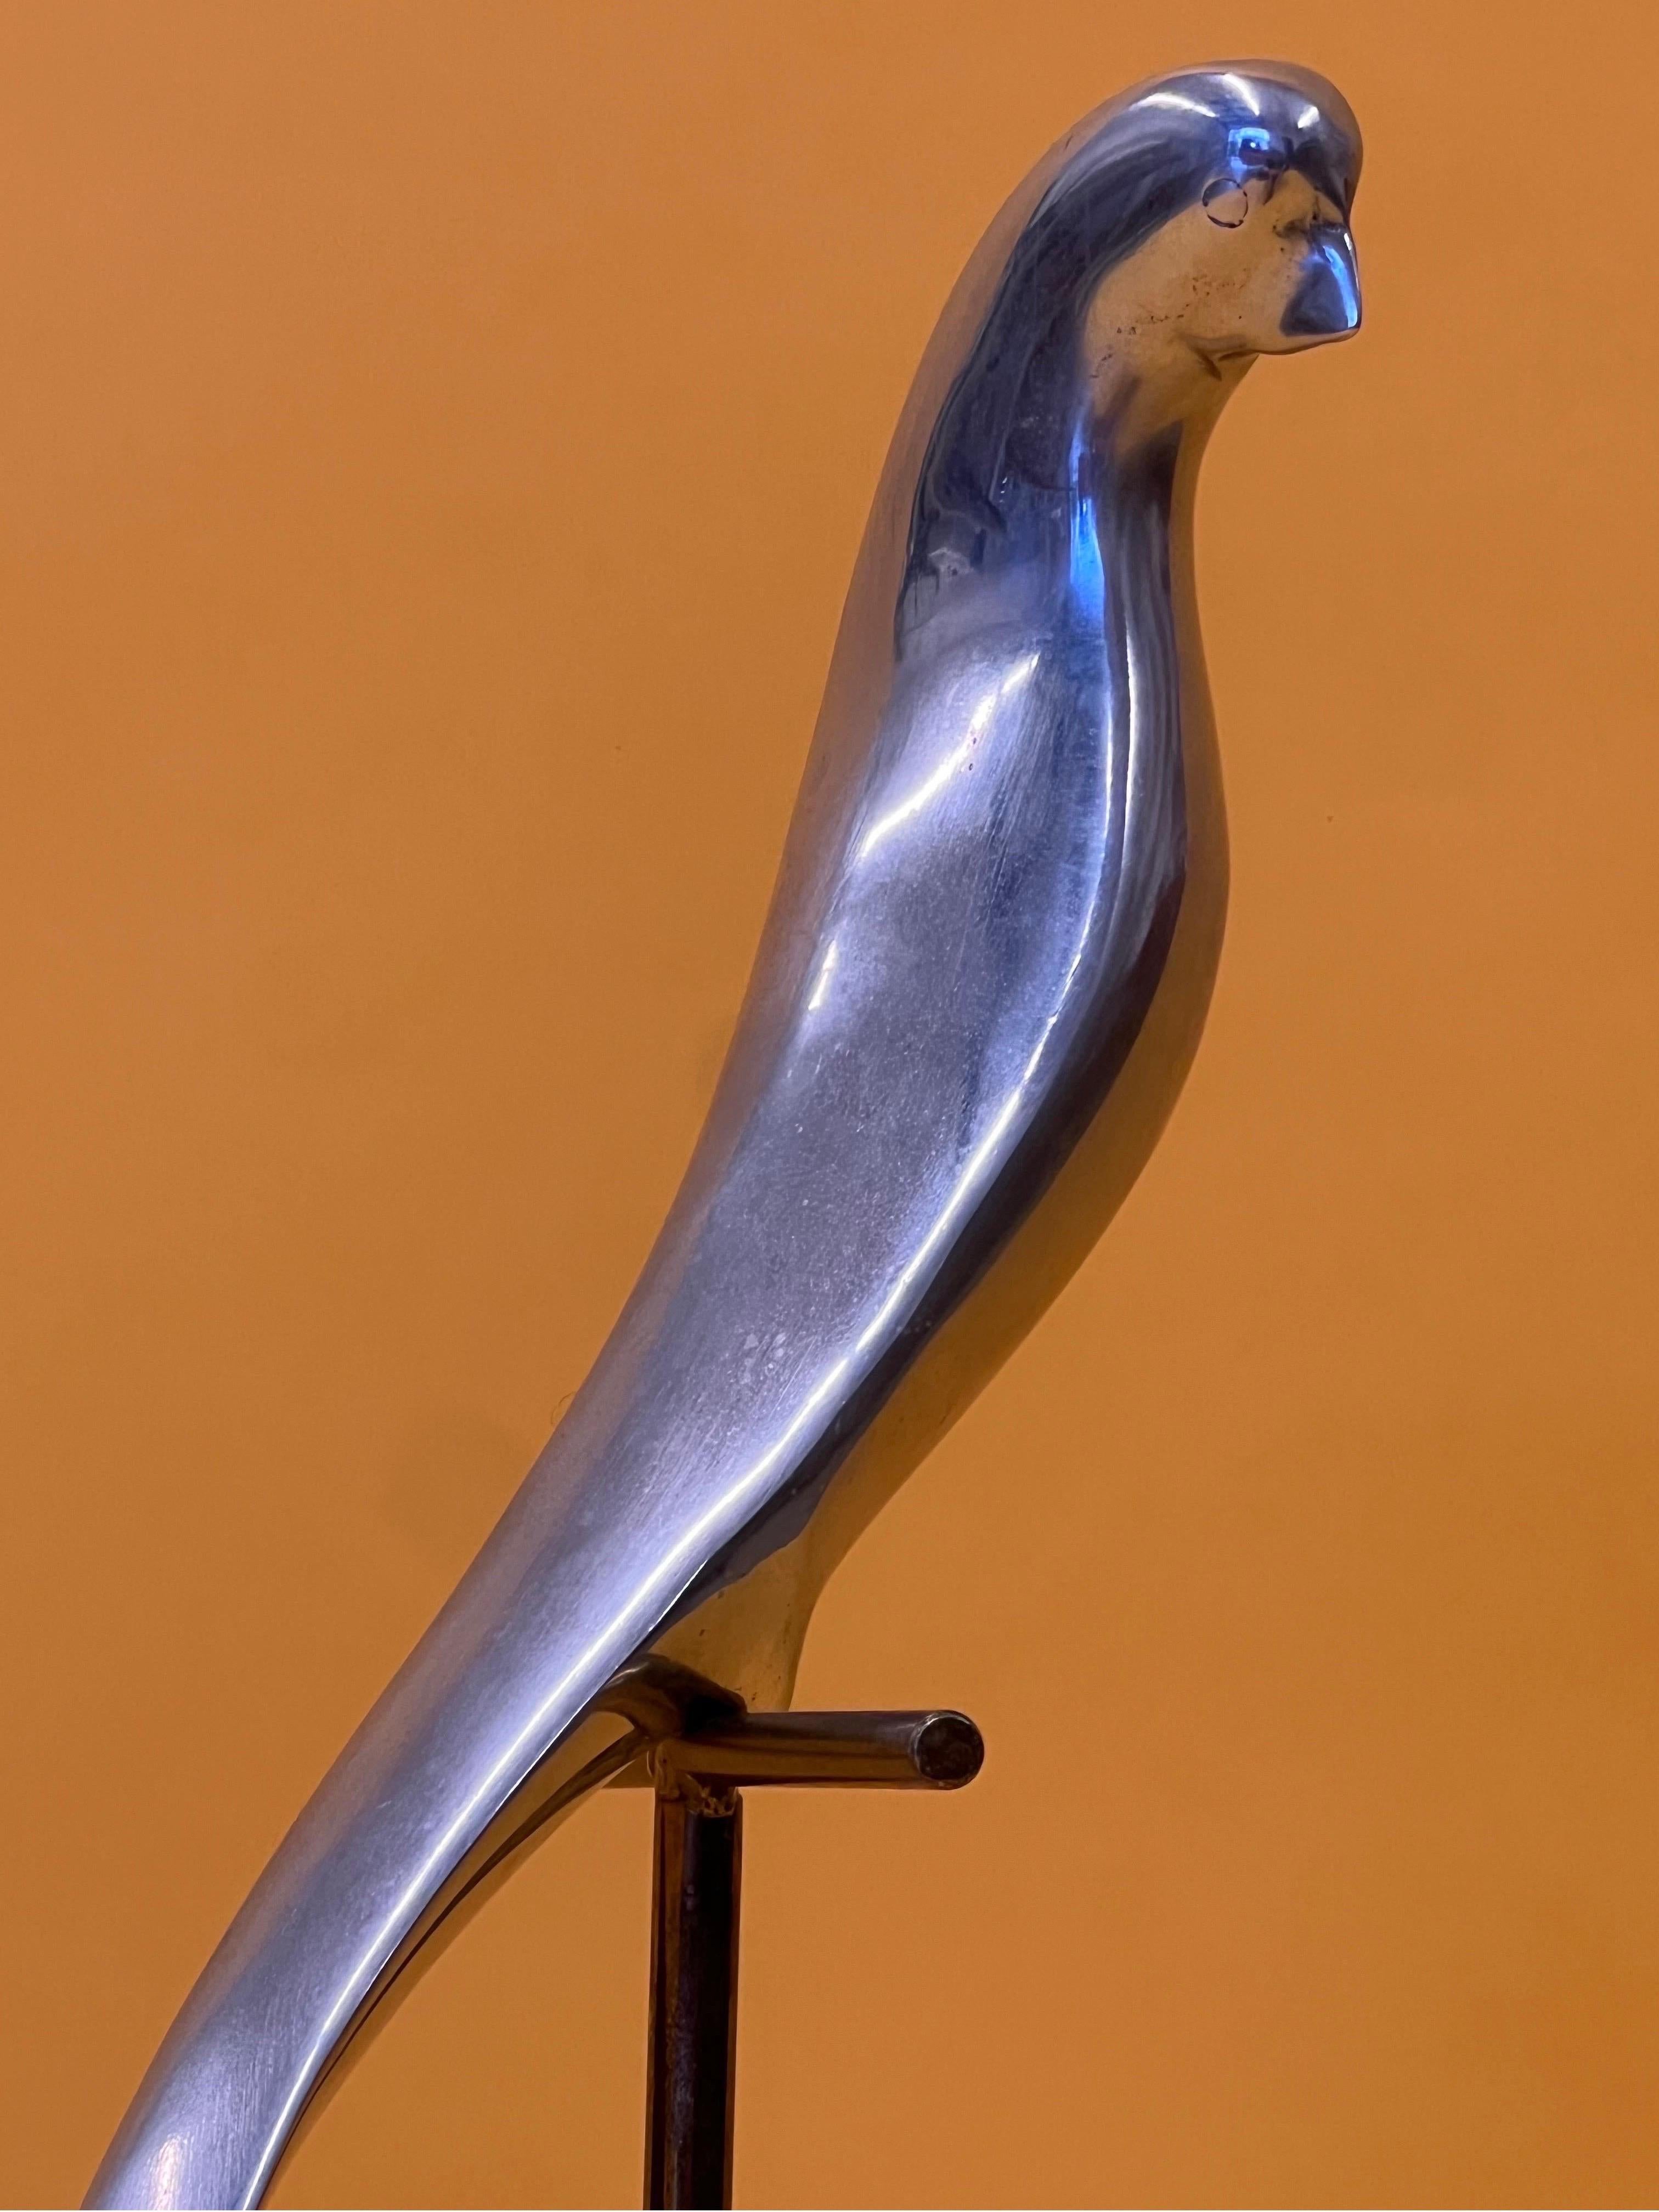 Sculpture des années 1980 réalisée par C.I.C. avec une légère signature encore présente. Un perroquet en aluminium est assis sur un perchoir doré. La base carrée est en marbre avec une plaque dorée. Le perchoir avec perroquet pivote pour permettre